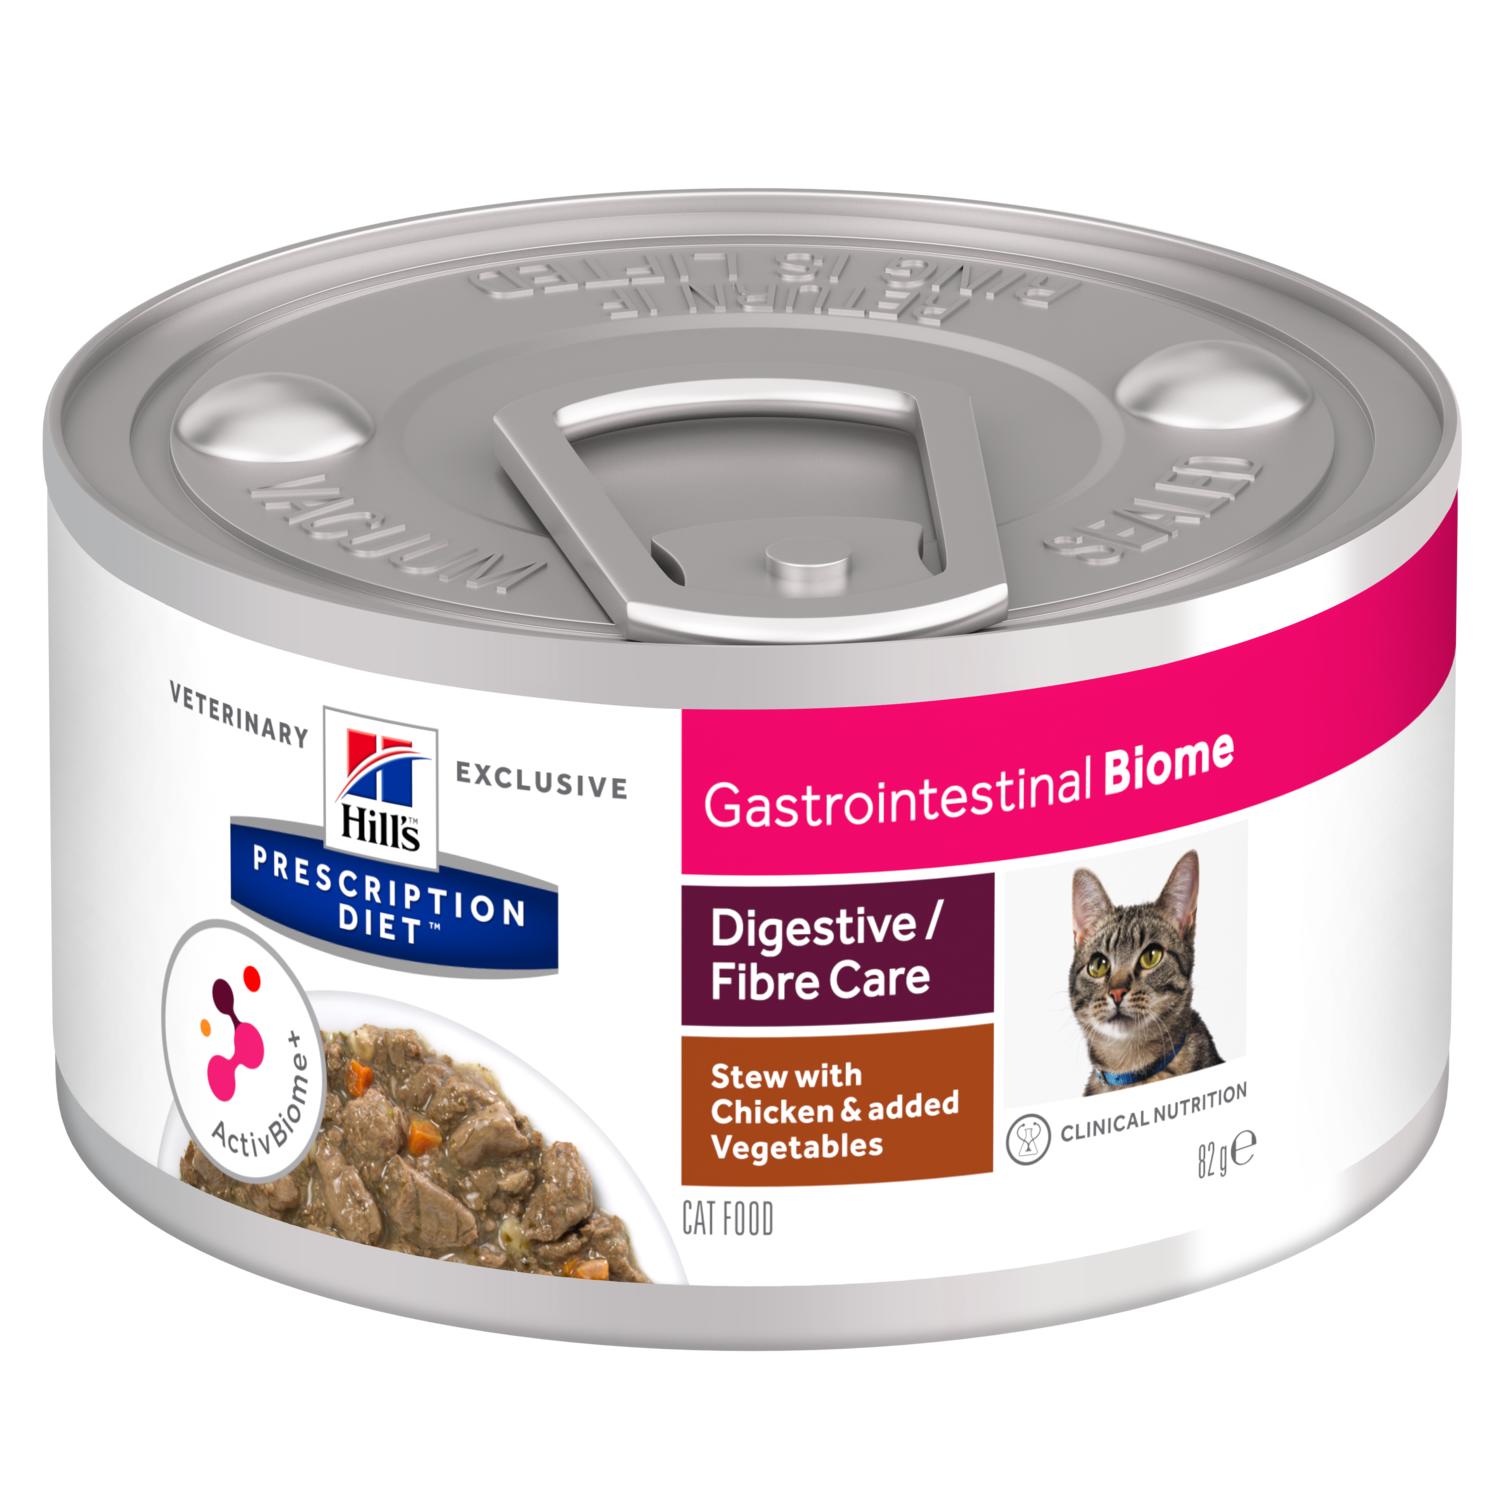 Hill's Prescription Diet Gastrointestinal Biome Chicken & Vegetable Stew Wet Cat Food